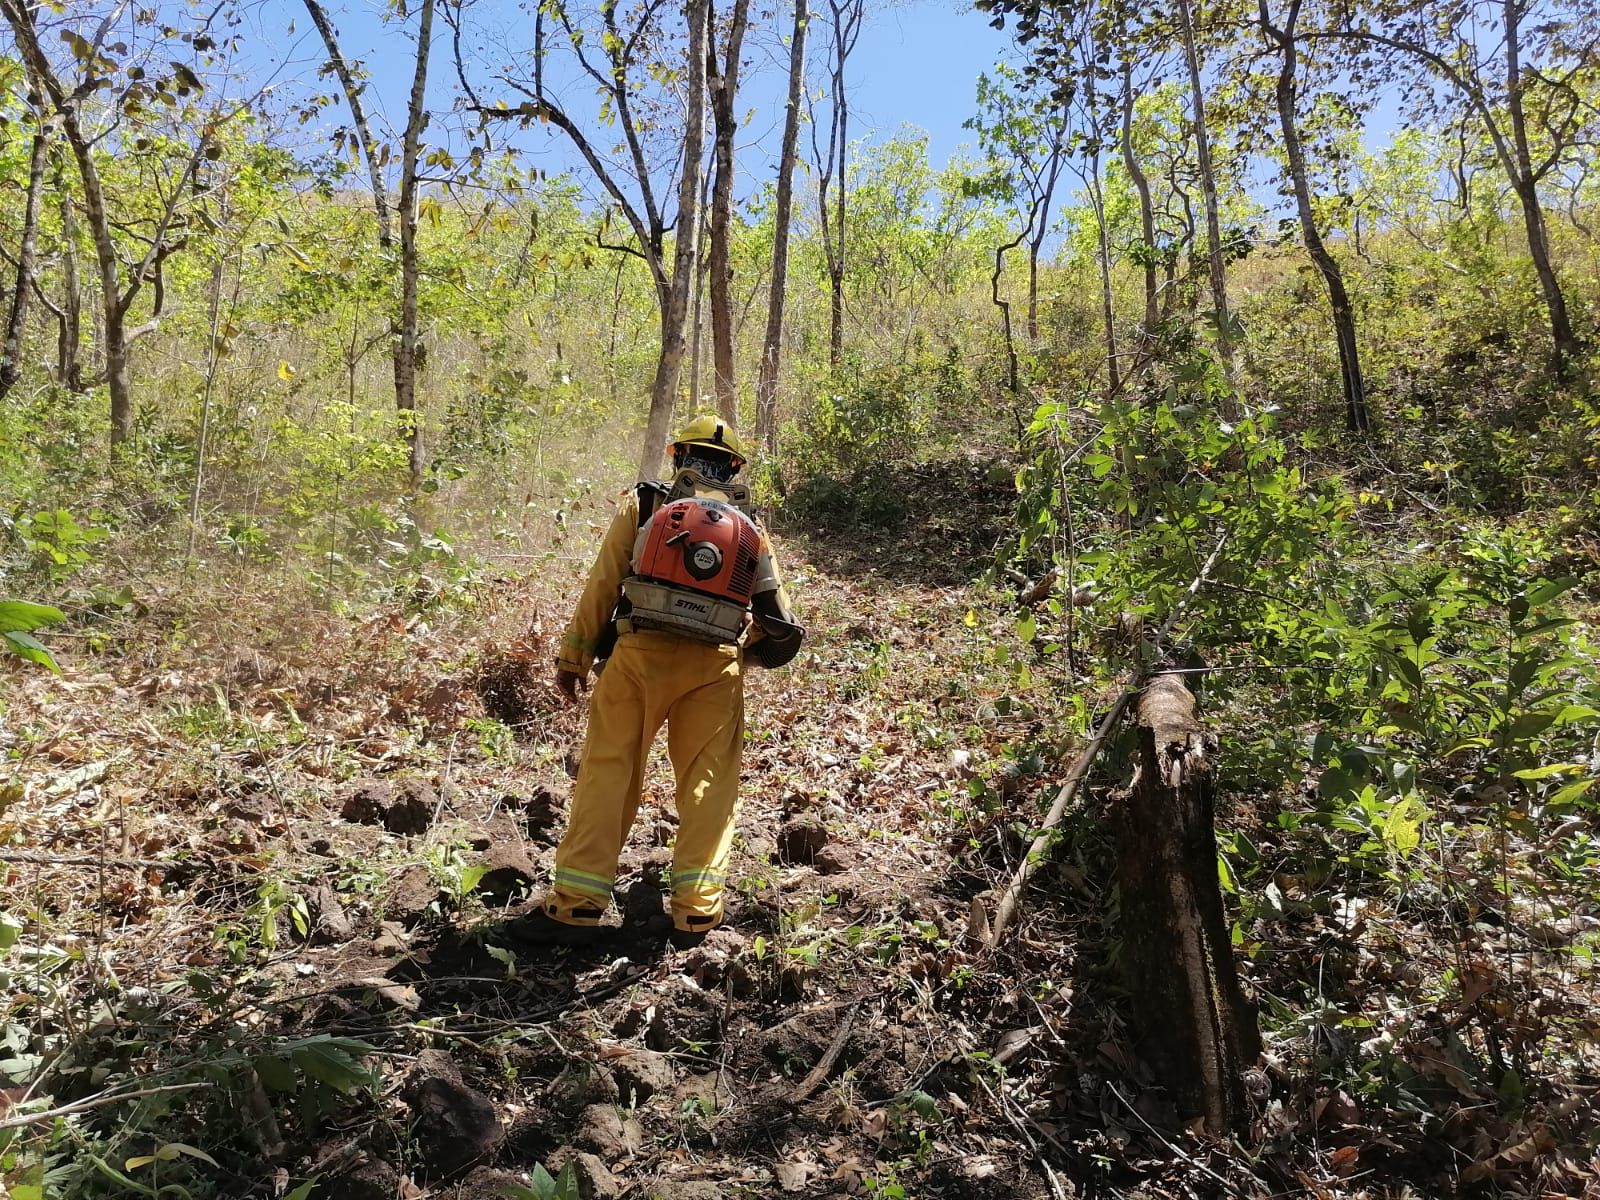 Bomberos confirma que incendios forestales están controlados y extintos tras daño a más de 1500 hectáreas